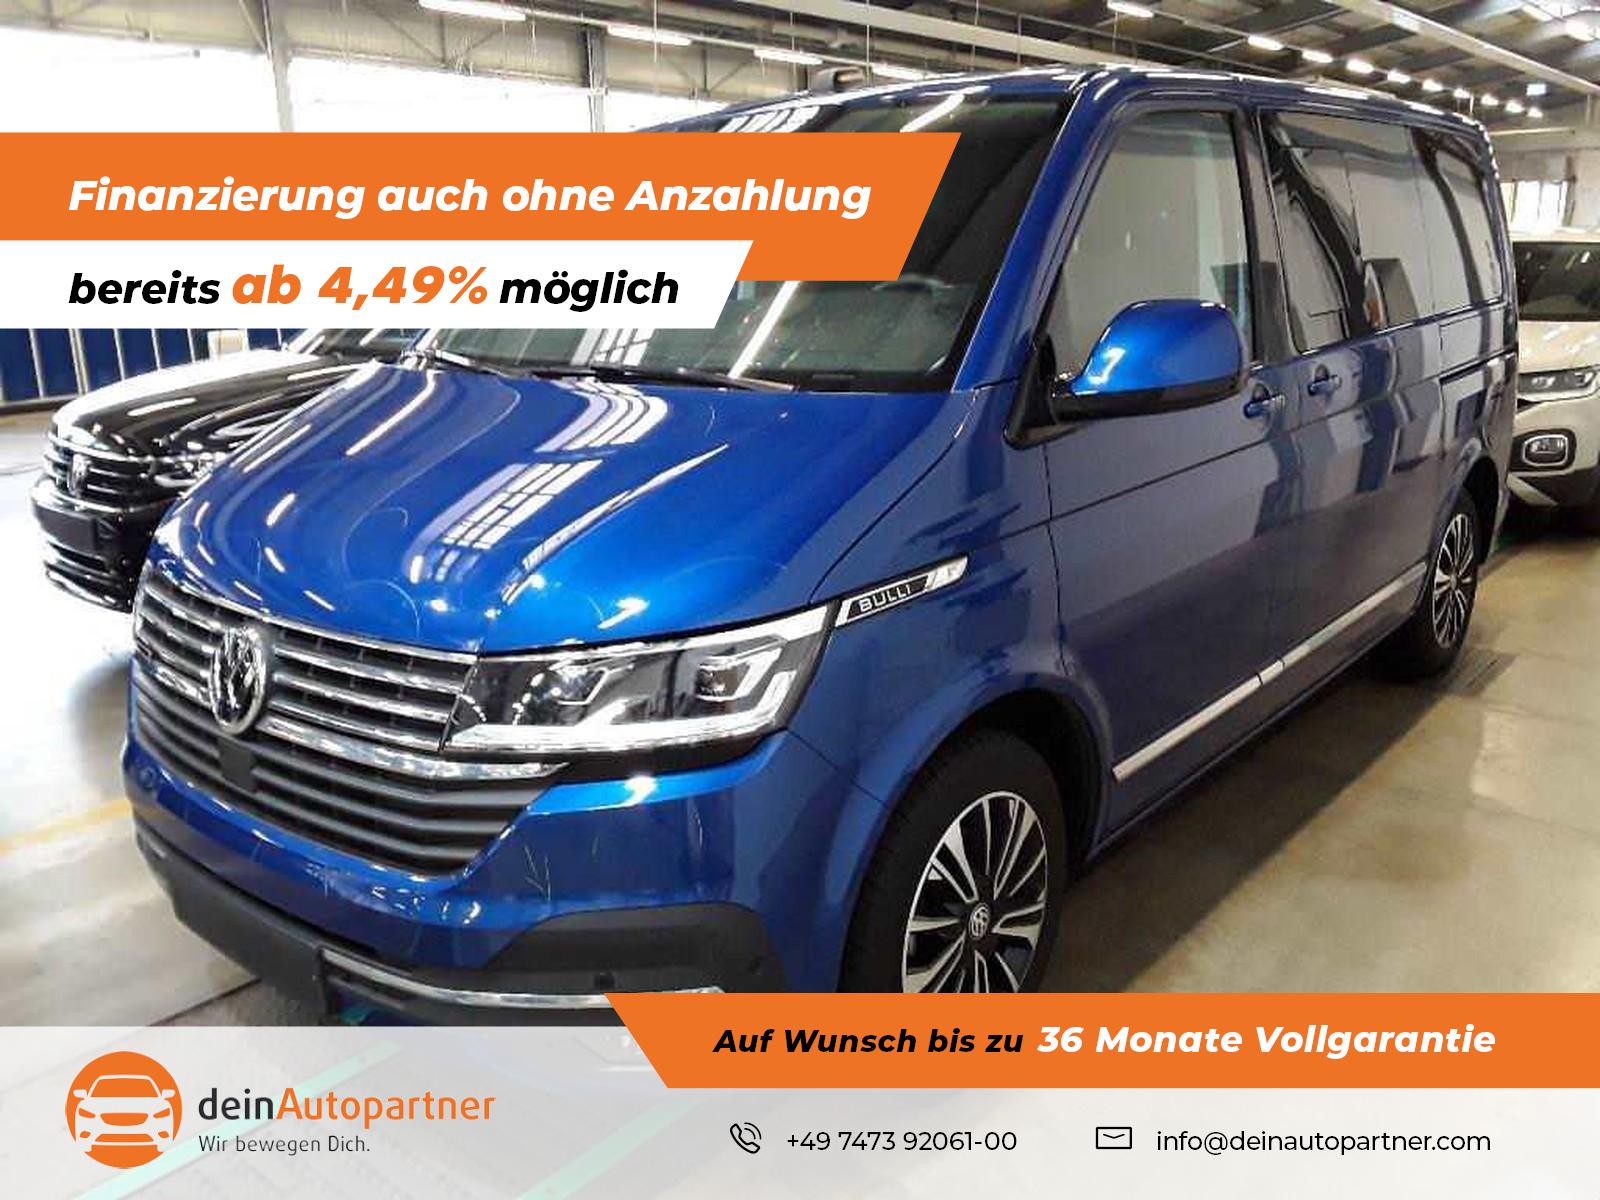 Volkswagen T6.1 Multivan gebraucht kaufen in Mössingen Preis 61750